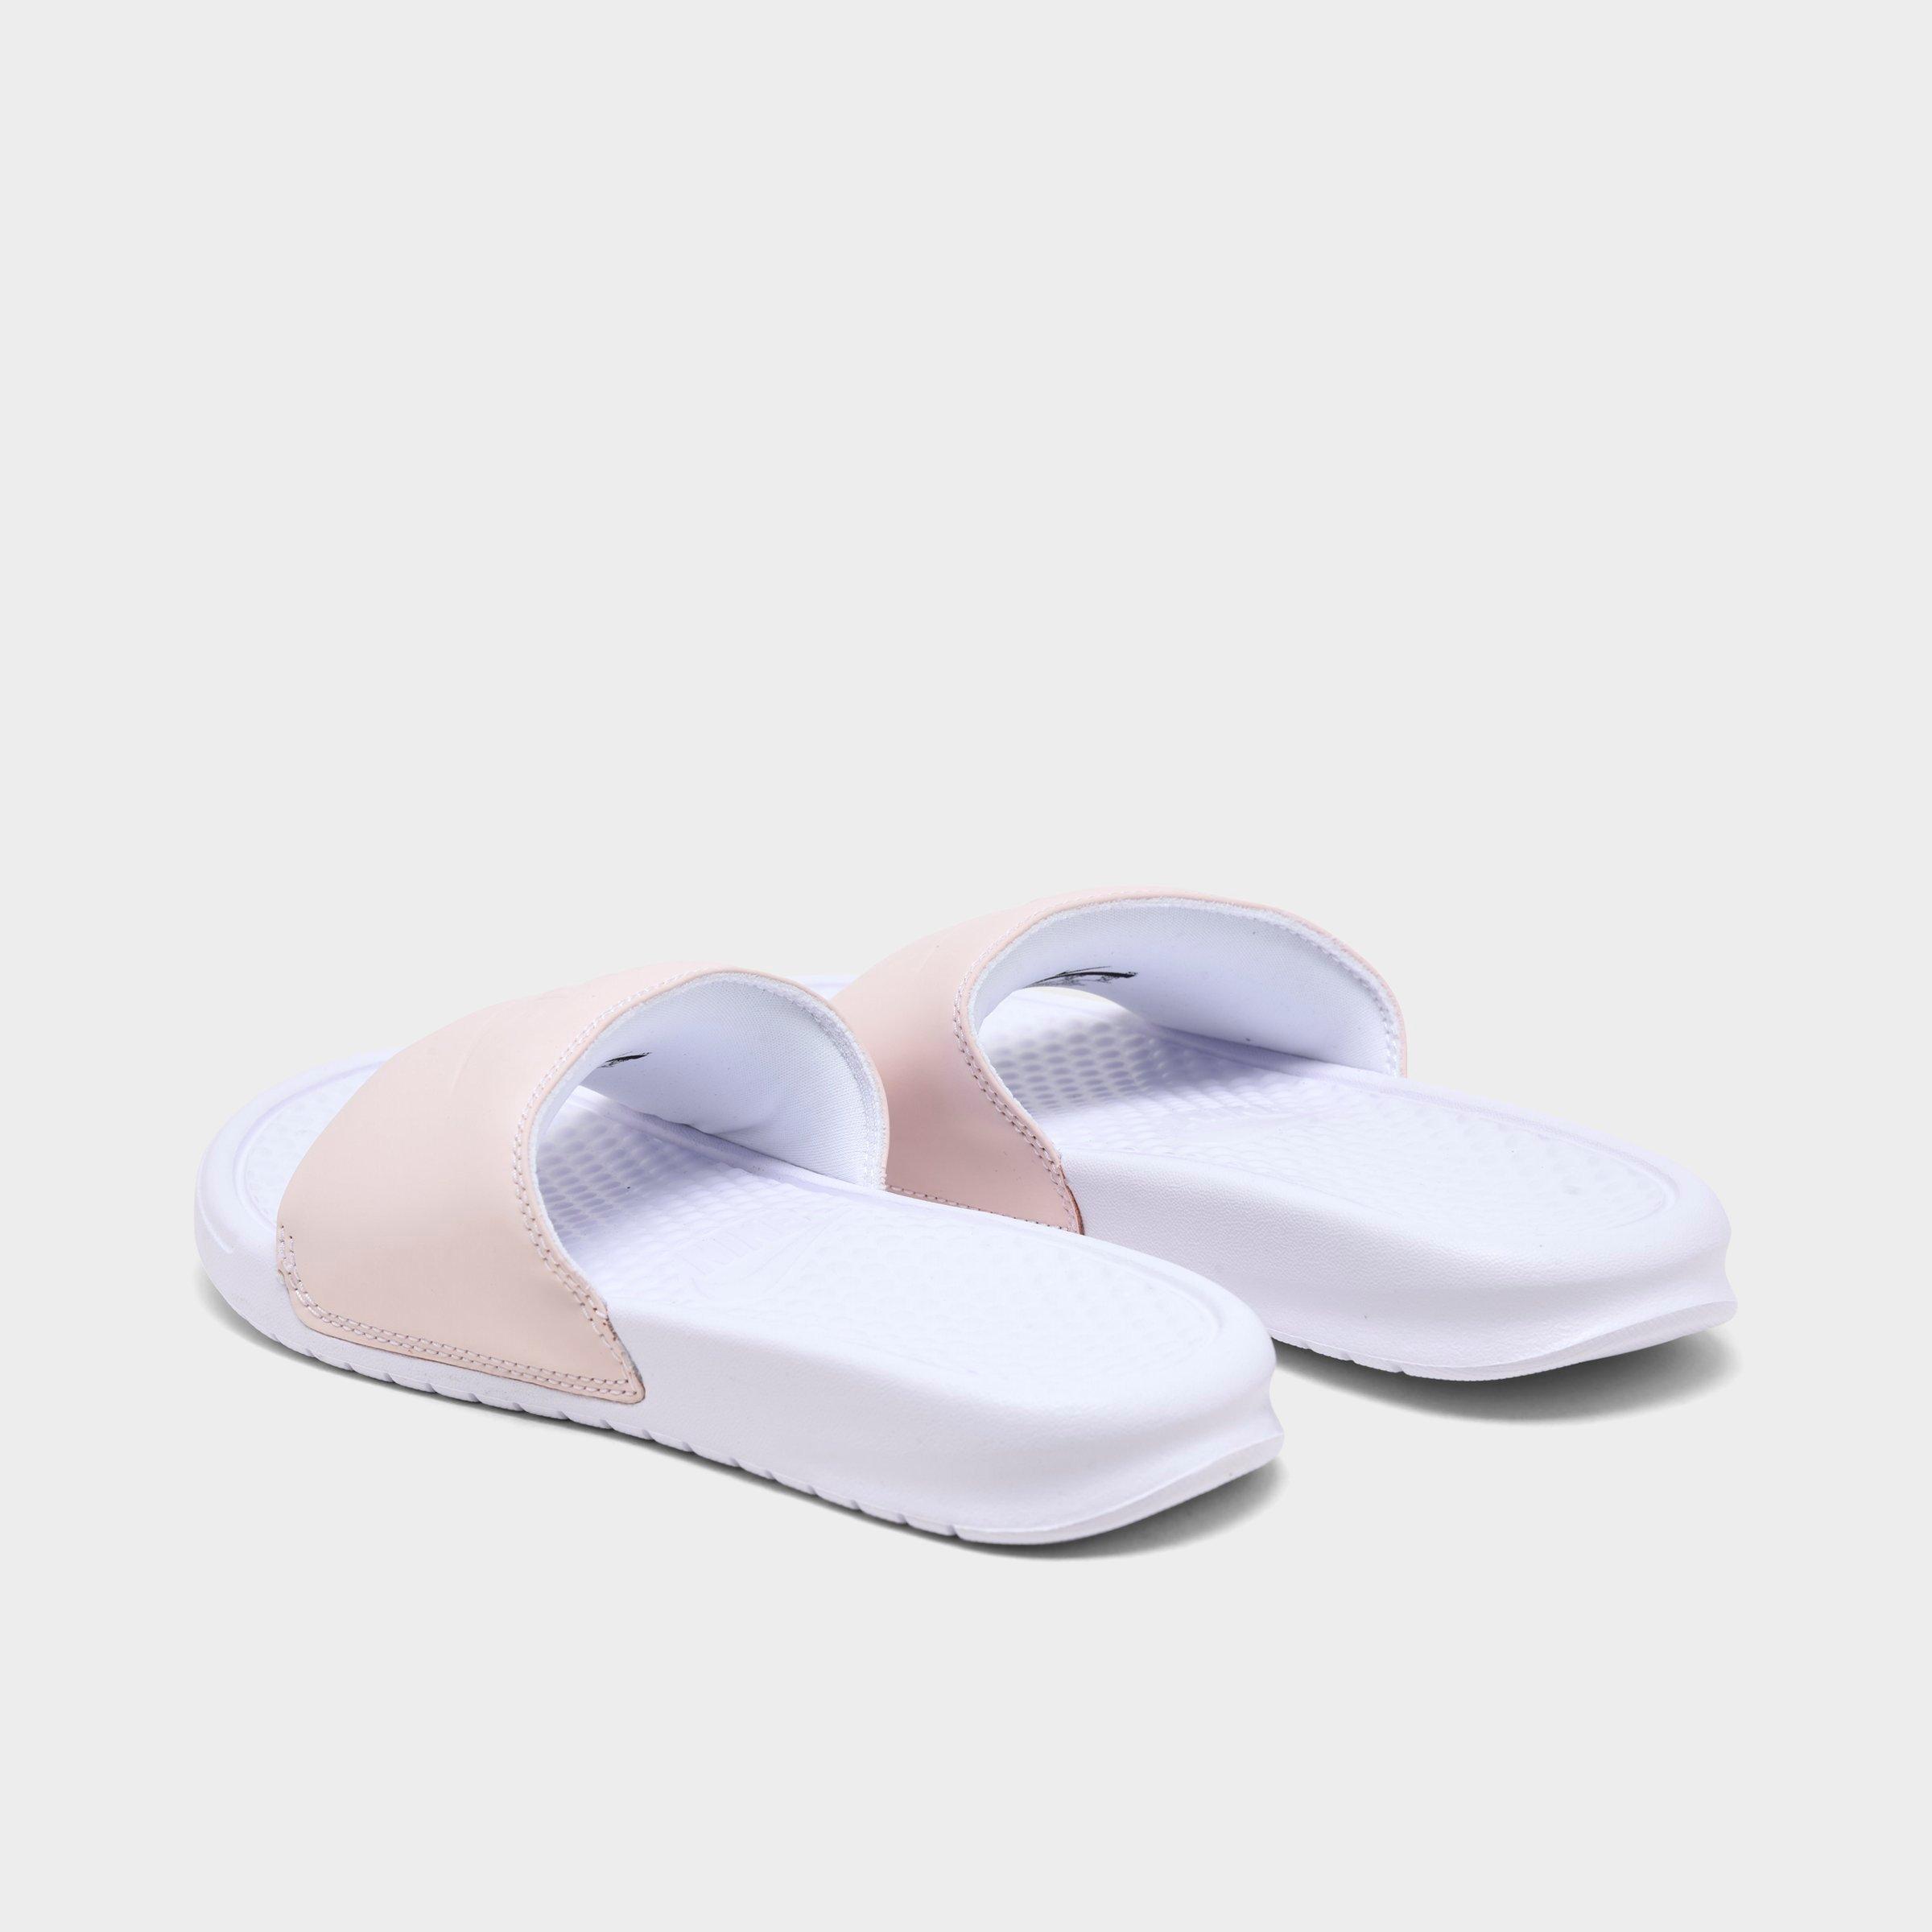 nike women's slide sandals